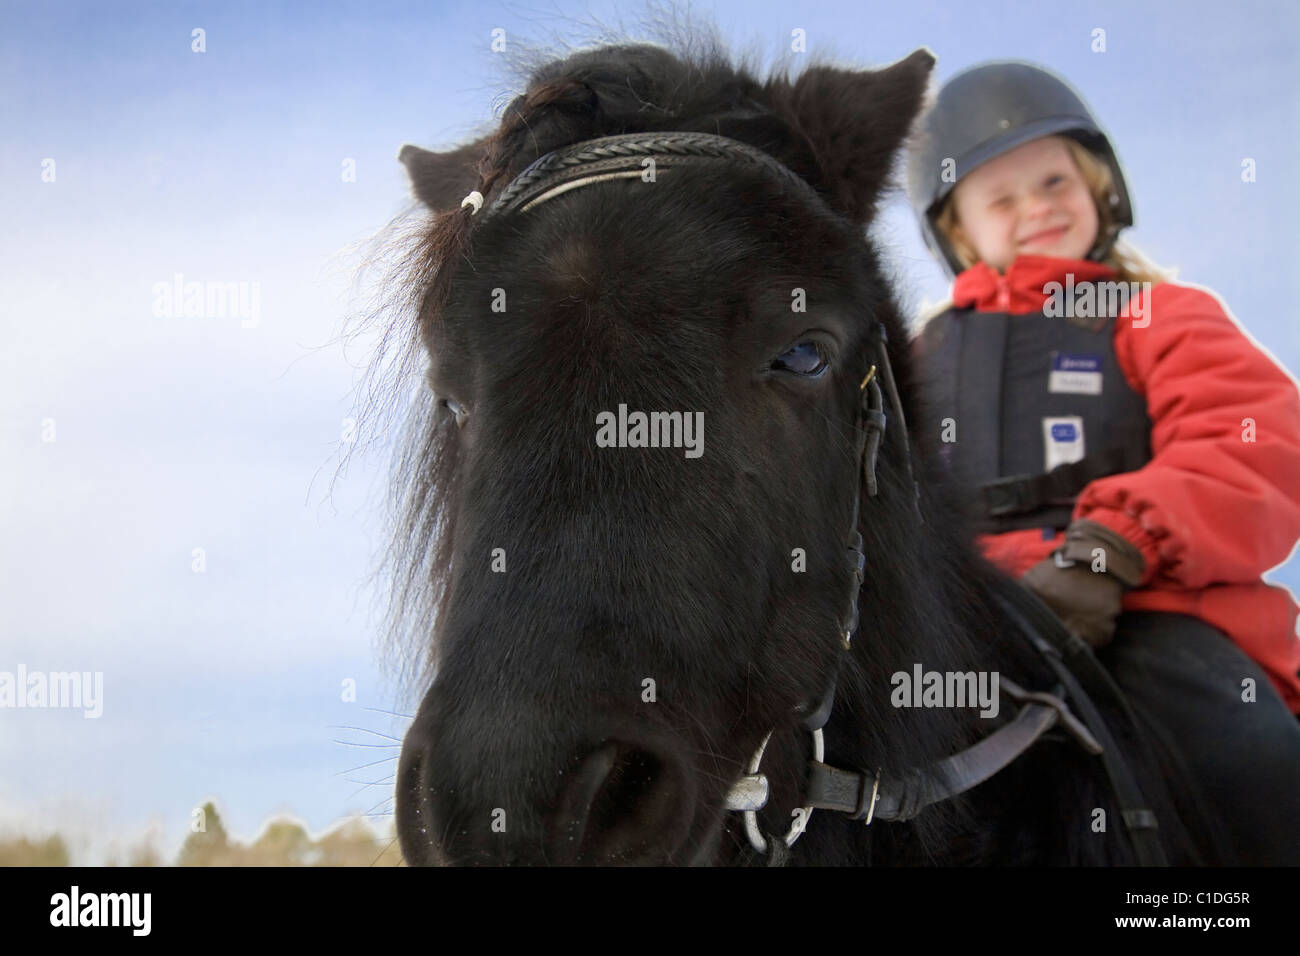 Jeune fille heureuse sur un poney noir. Banque D'Images